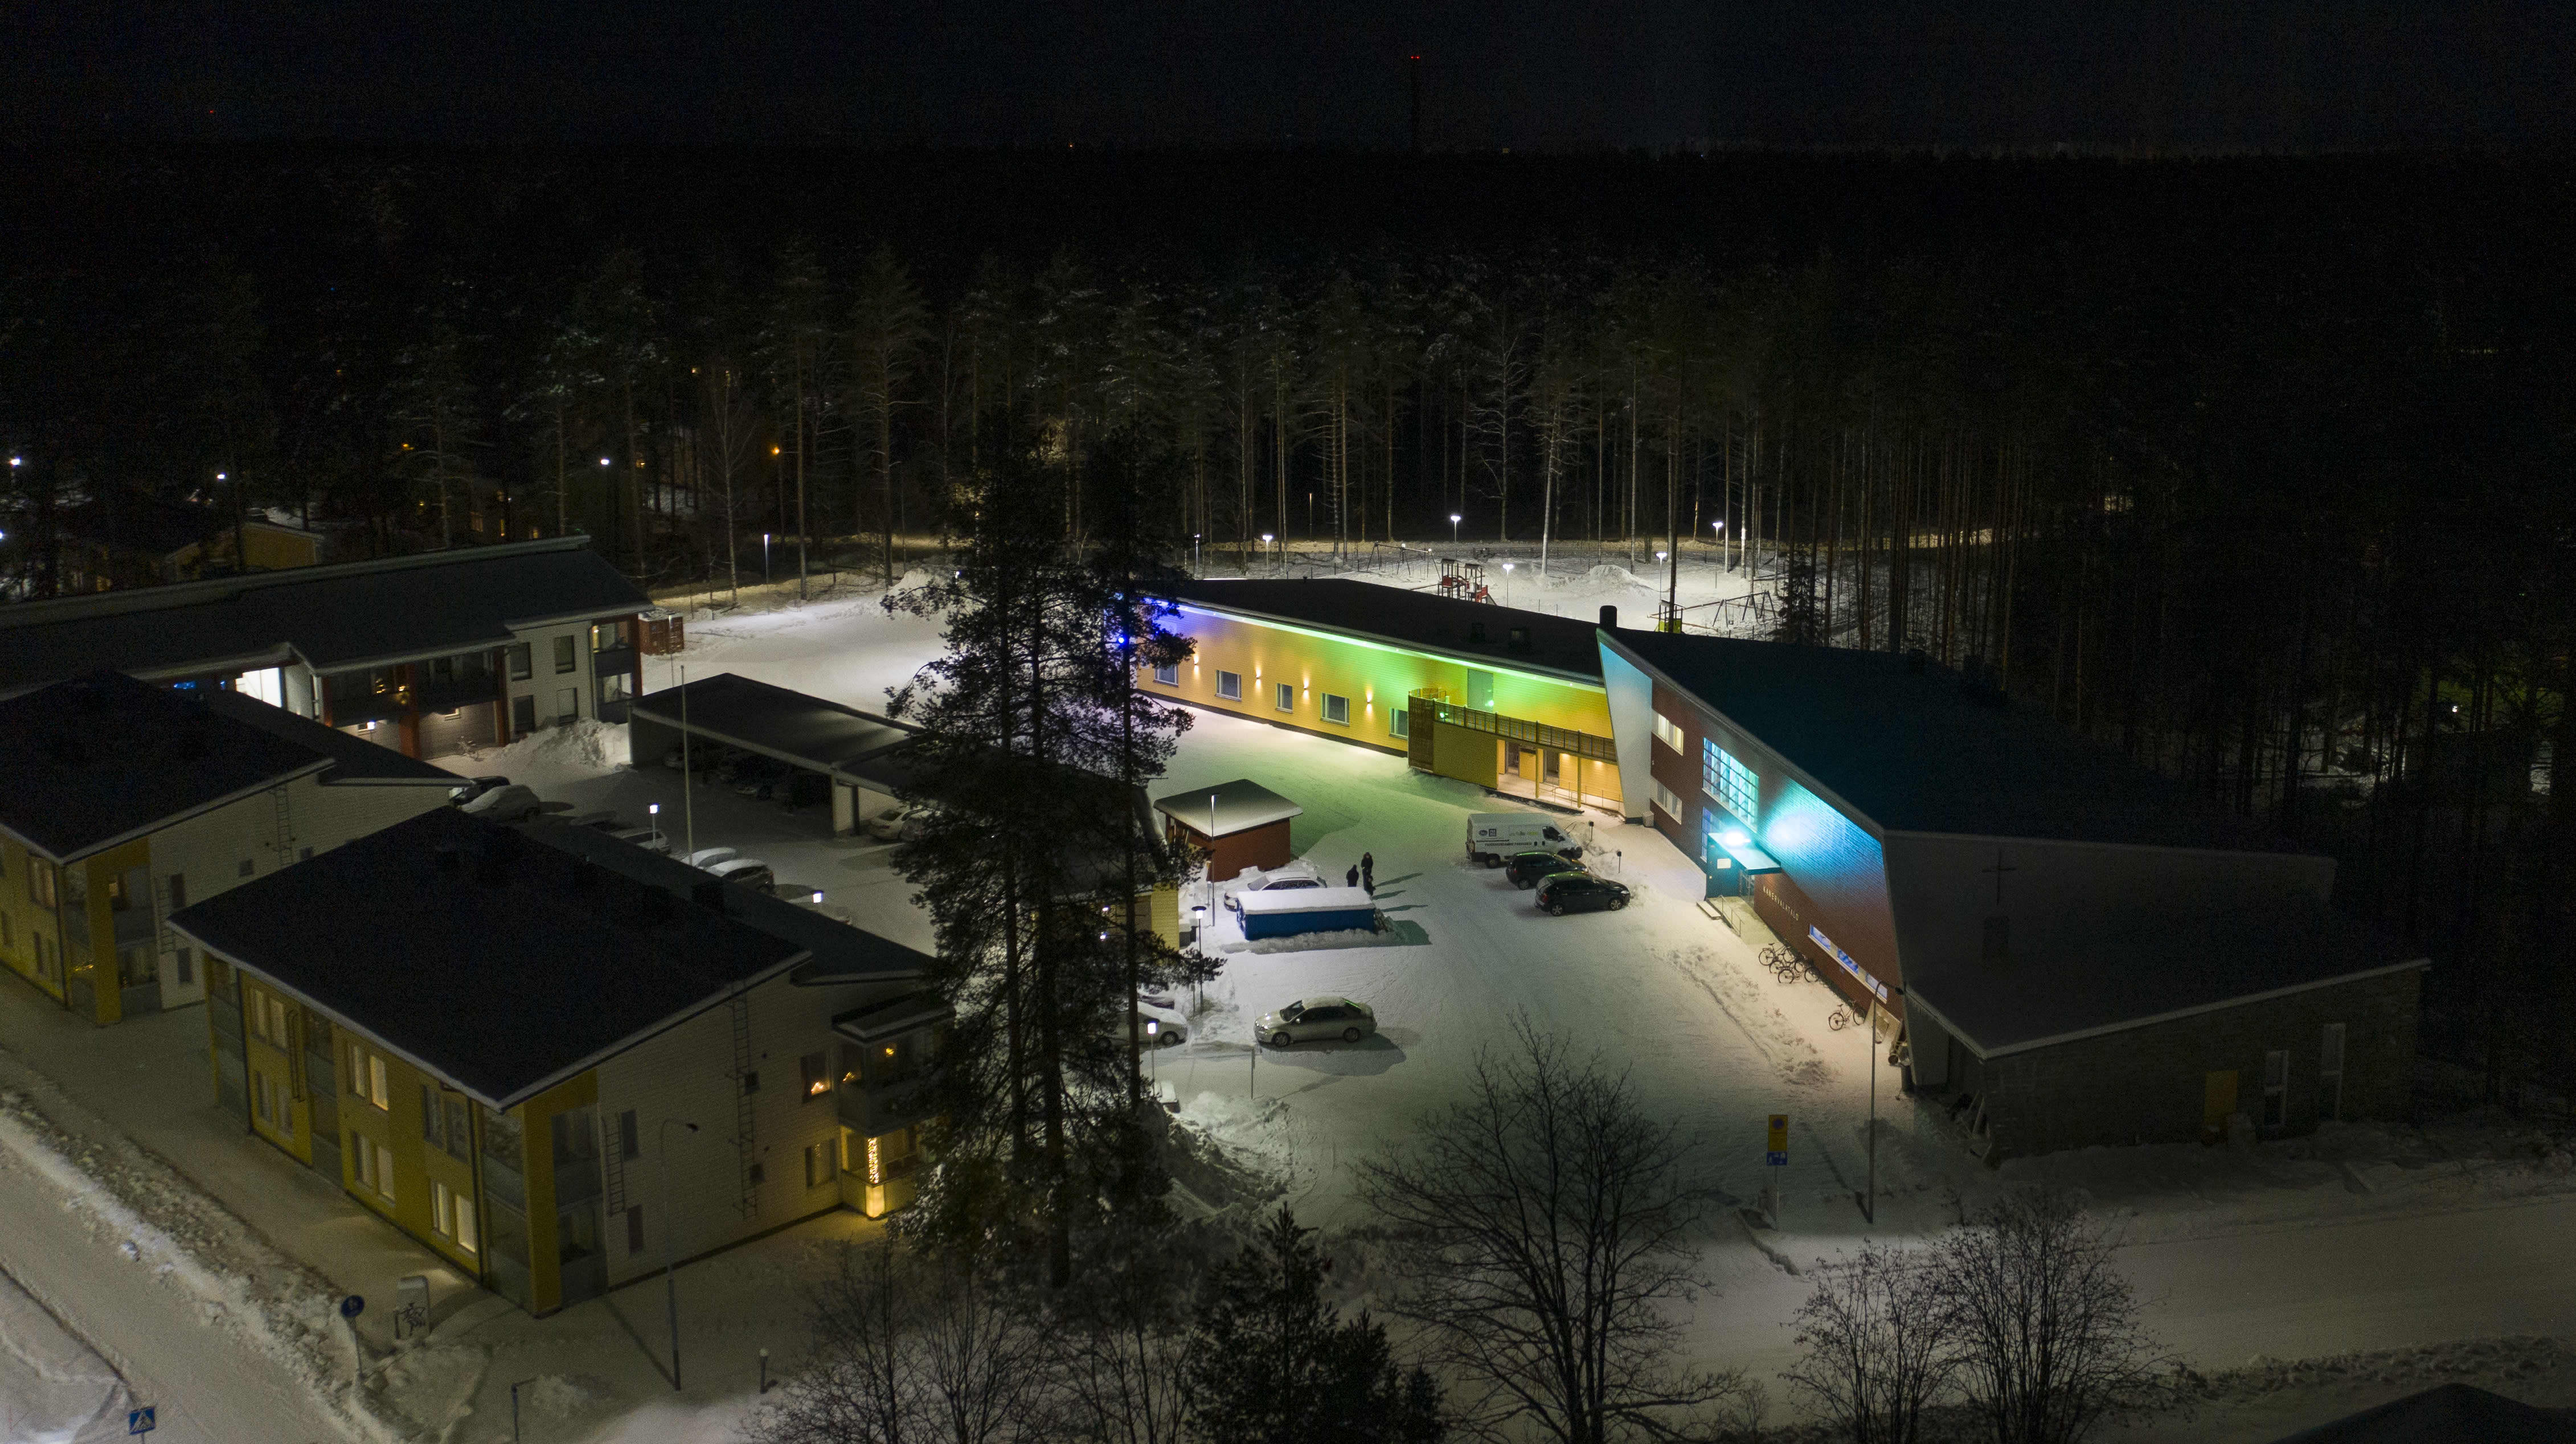 Joensuun Vapaaseurakunnan toimitilat loistavat värikkäissä koristevaloissa lumisessa Kanervalan kaupunginosassa. Ilmakuva, joka on otettu pimeällä.